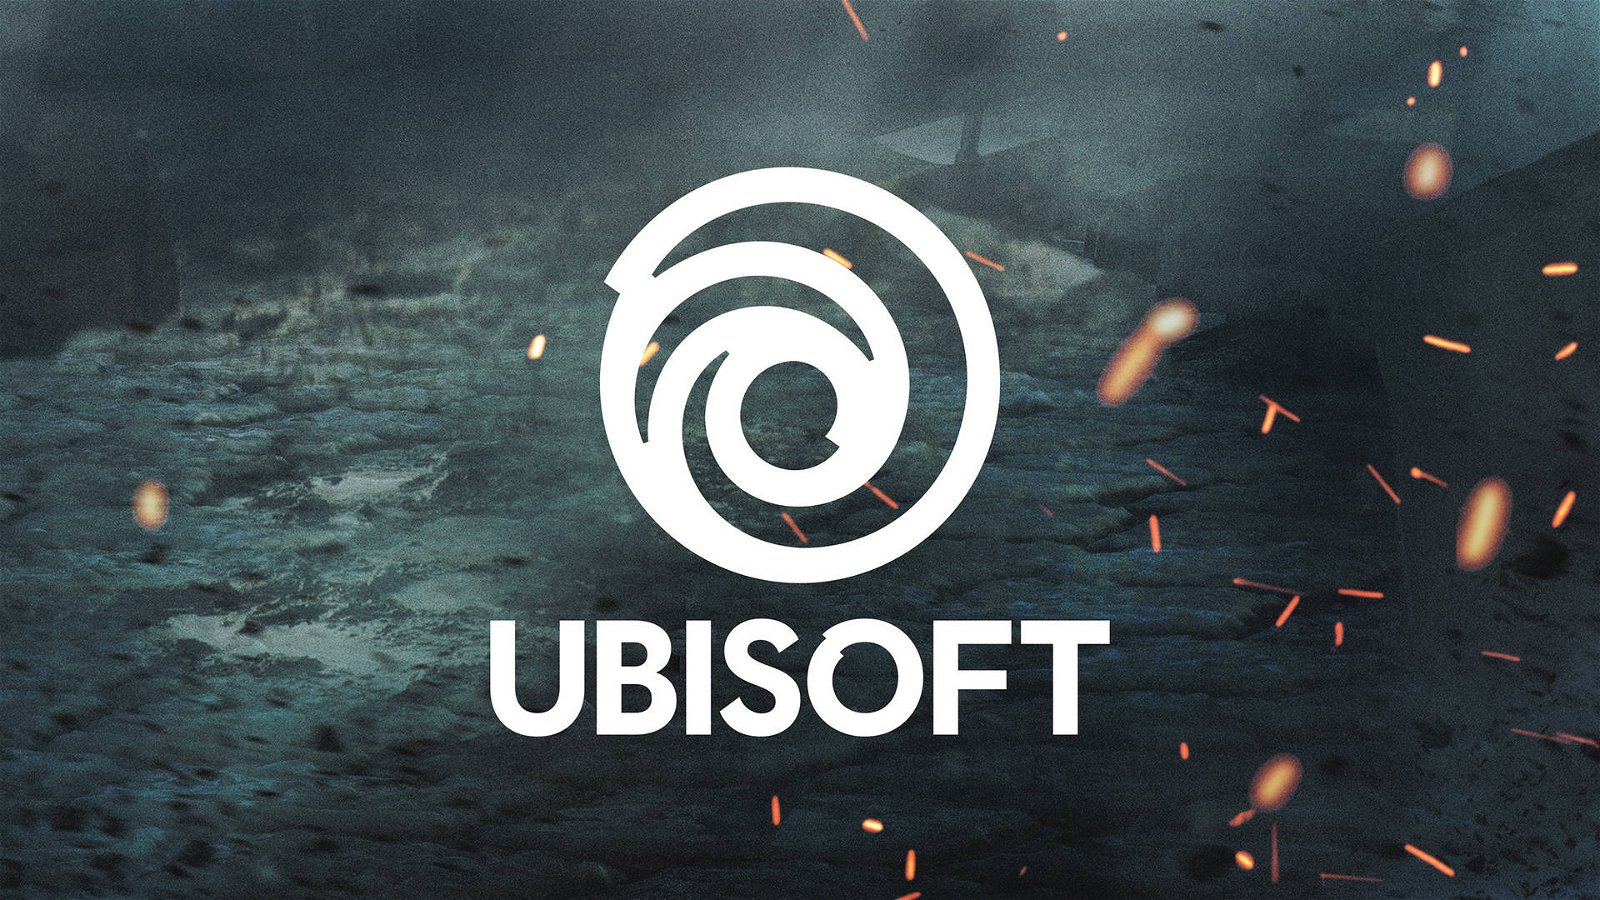 Immagine di PS5: Ubisoft attaccata dai troll su Twitter per un errore di battitura